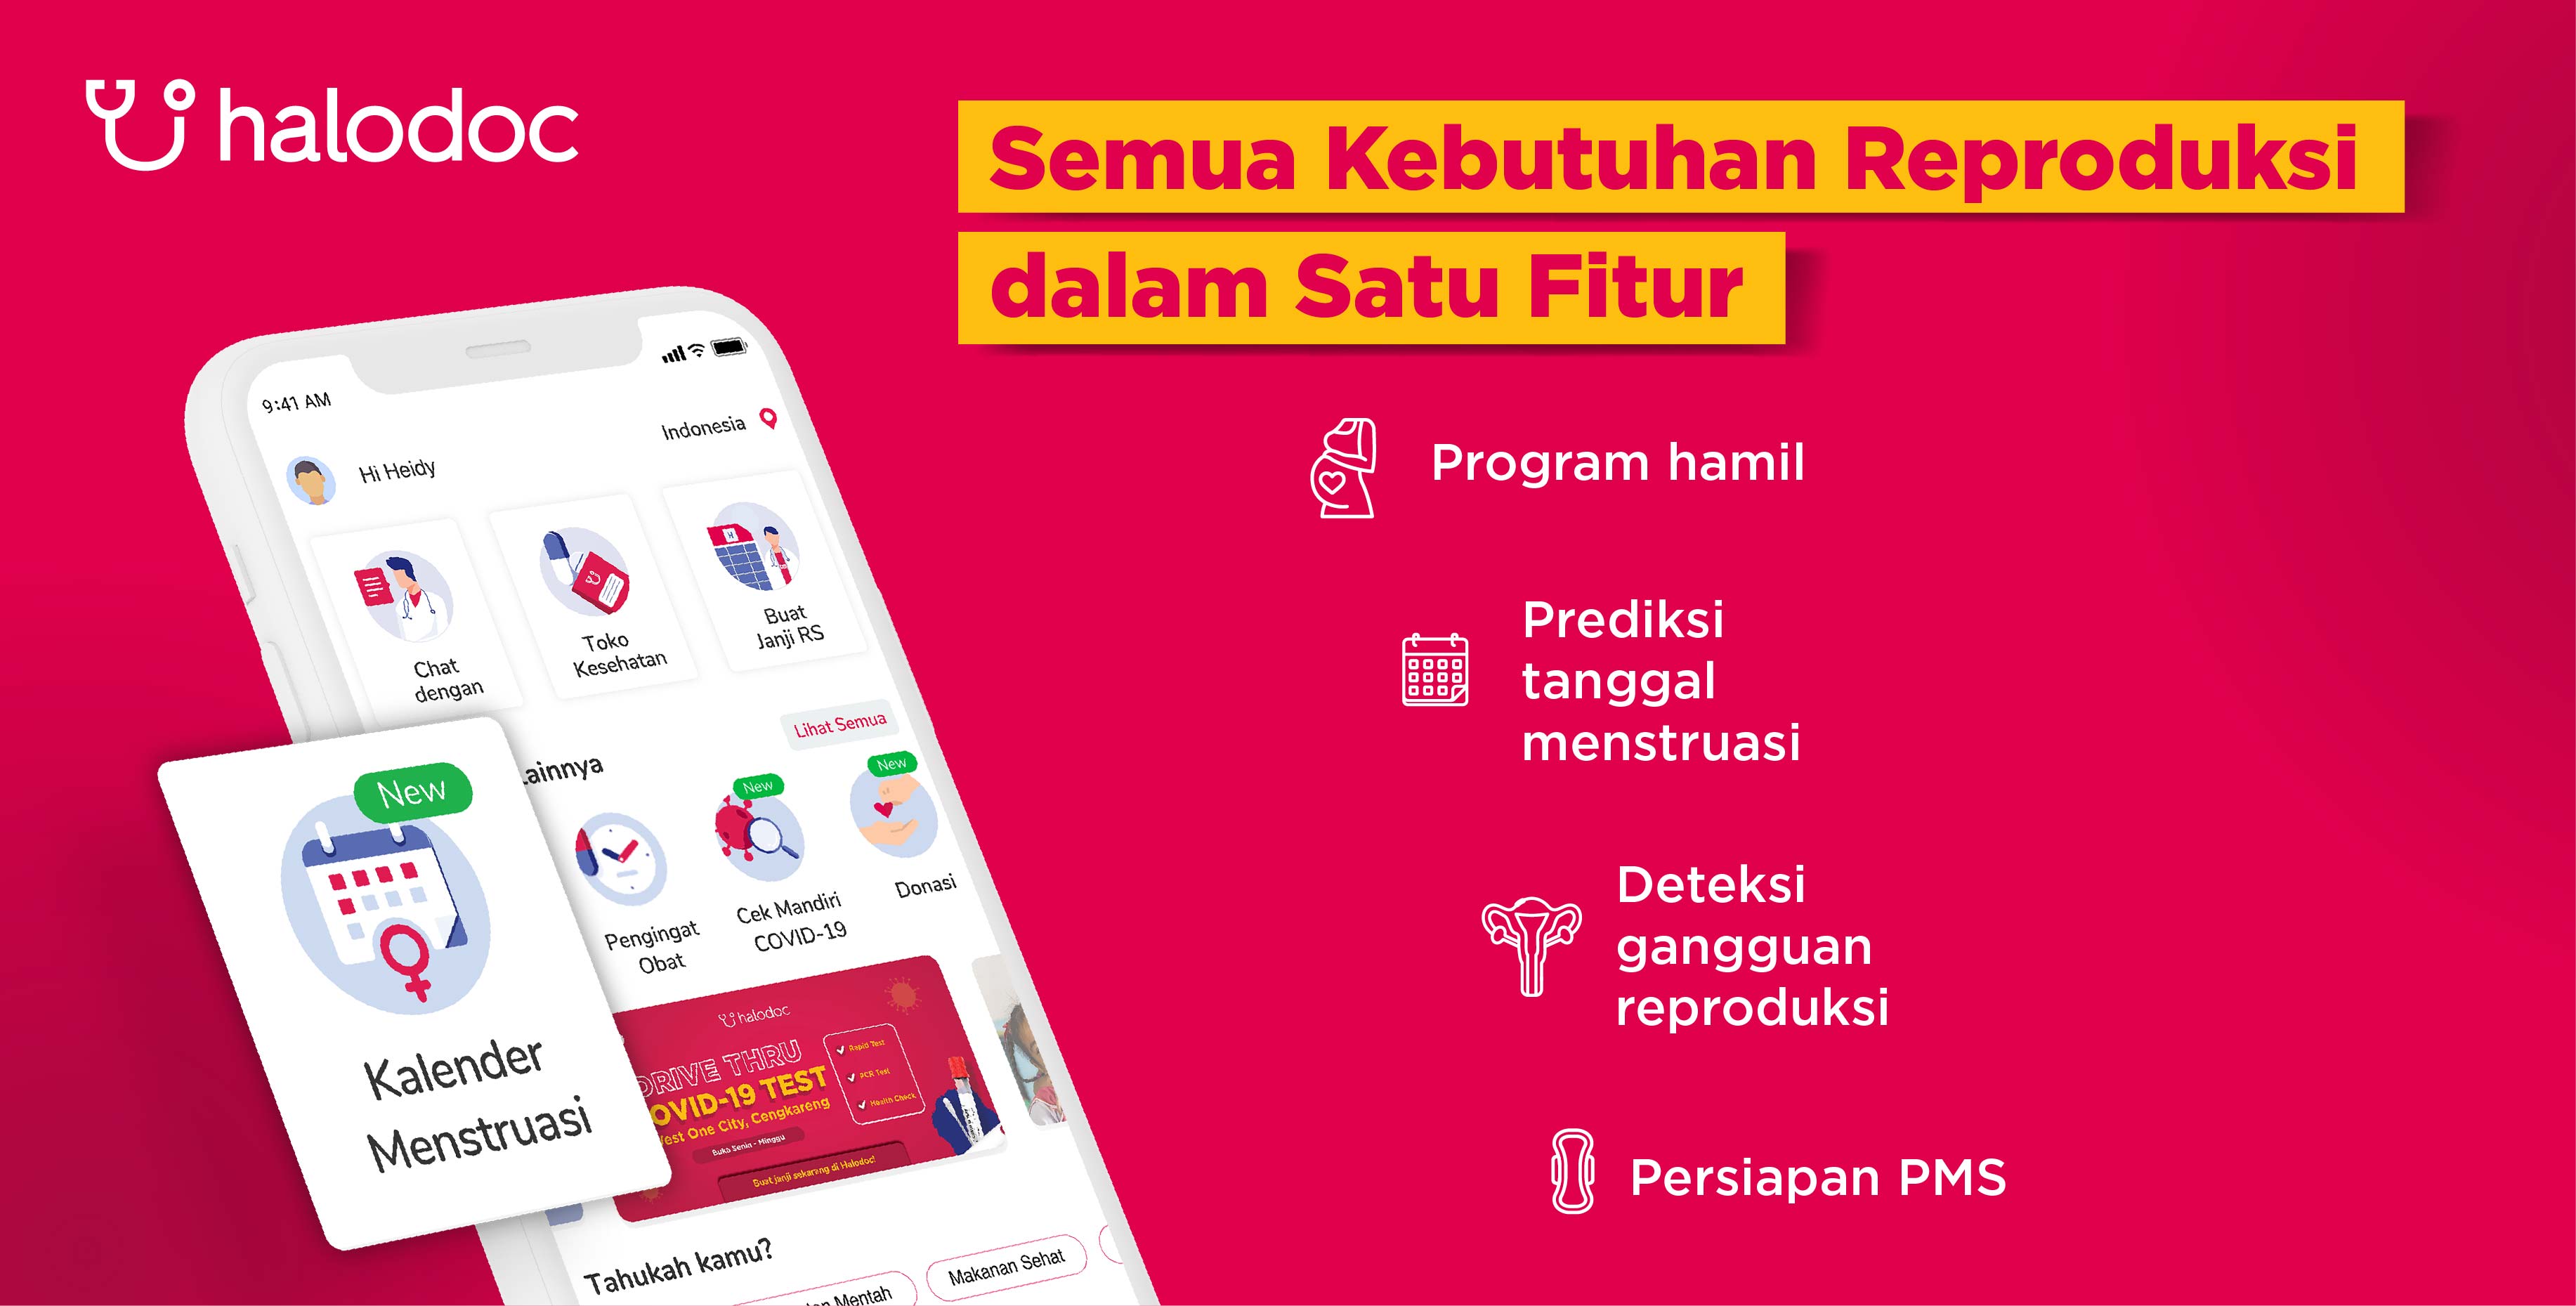 생리 달력 기능 출시, 인도네시아에서 가장 완벽한 건강 애플리케이션이 됨